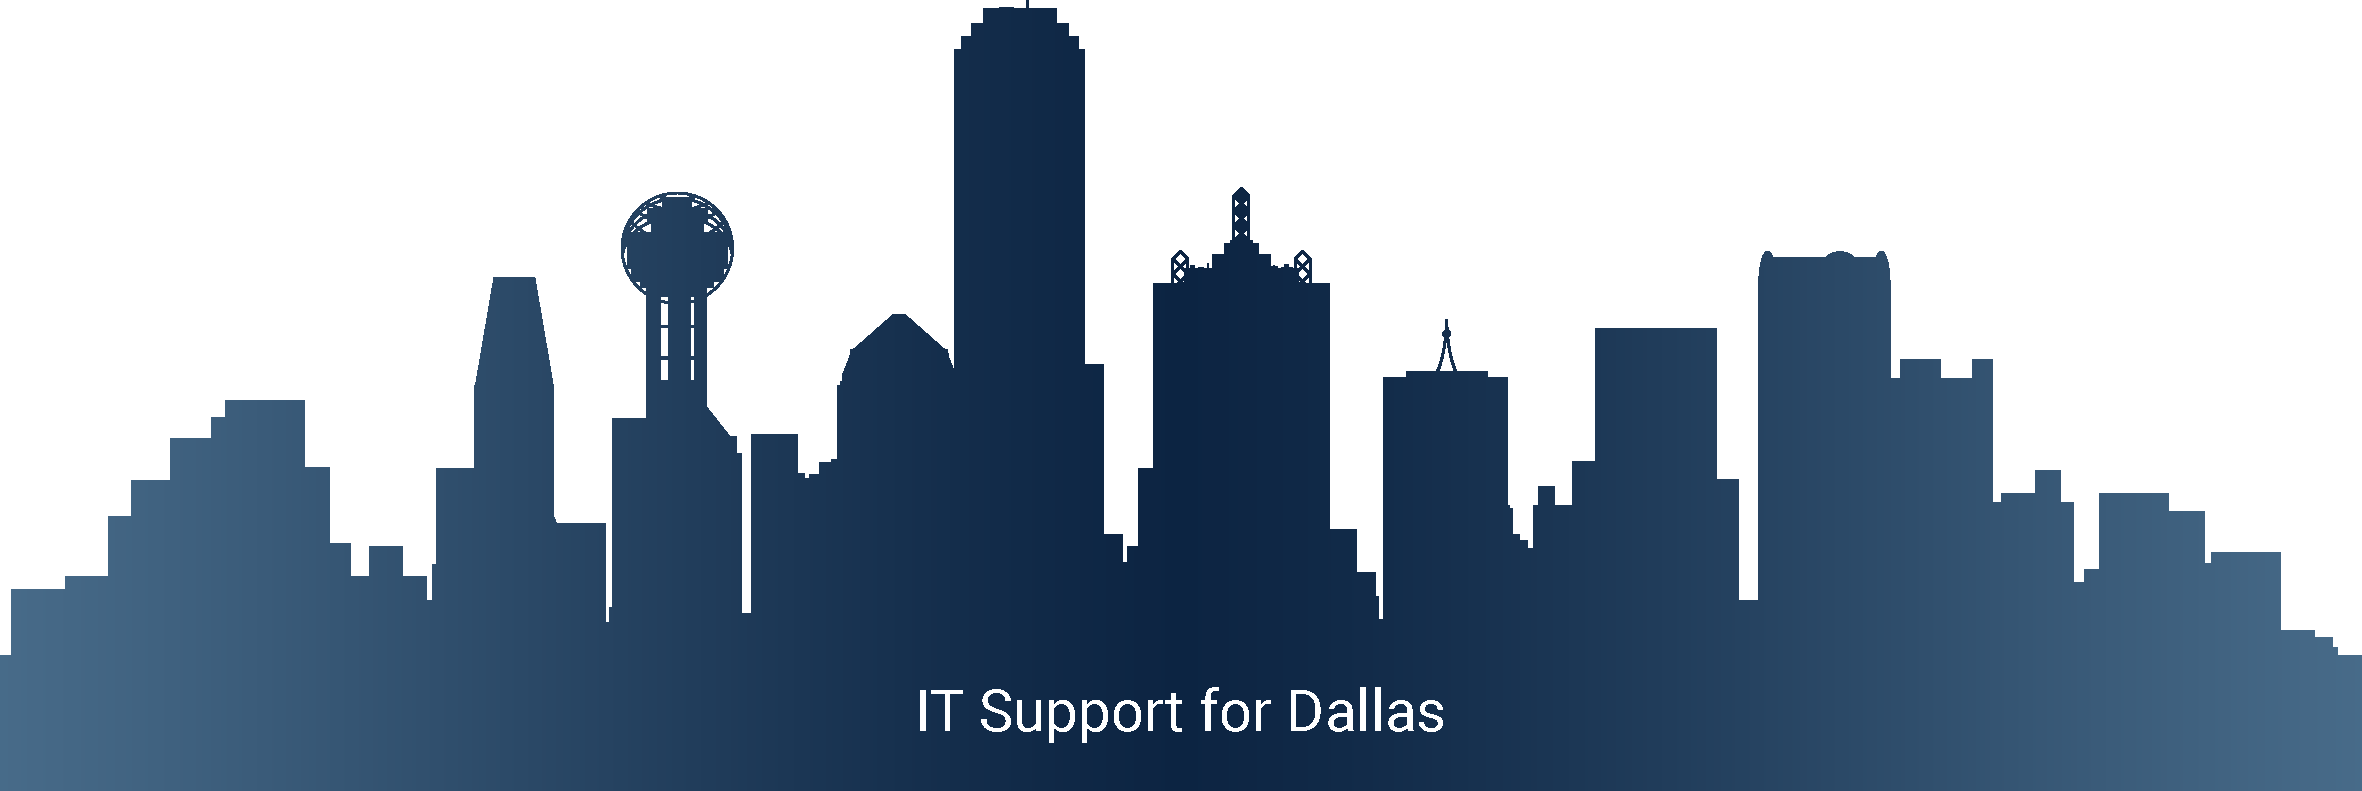 Dallas IT Support